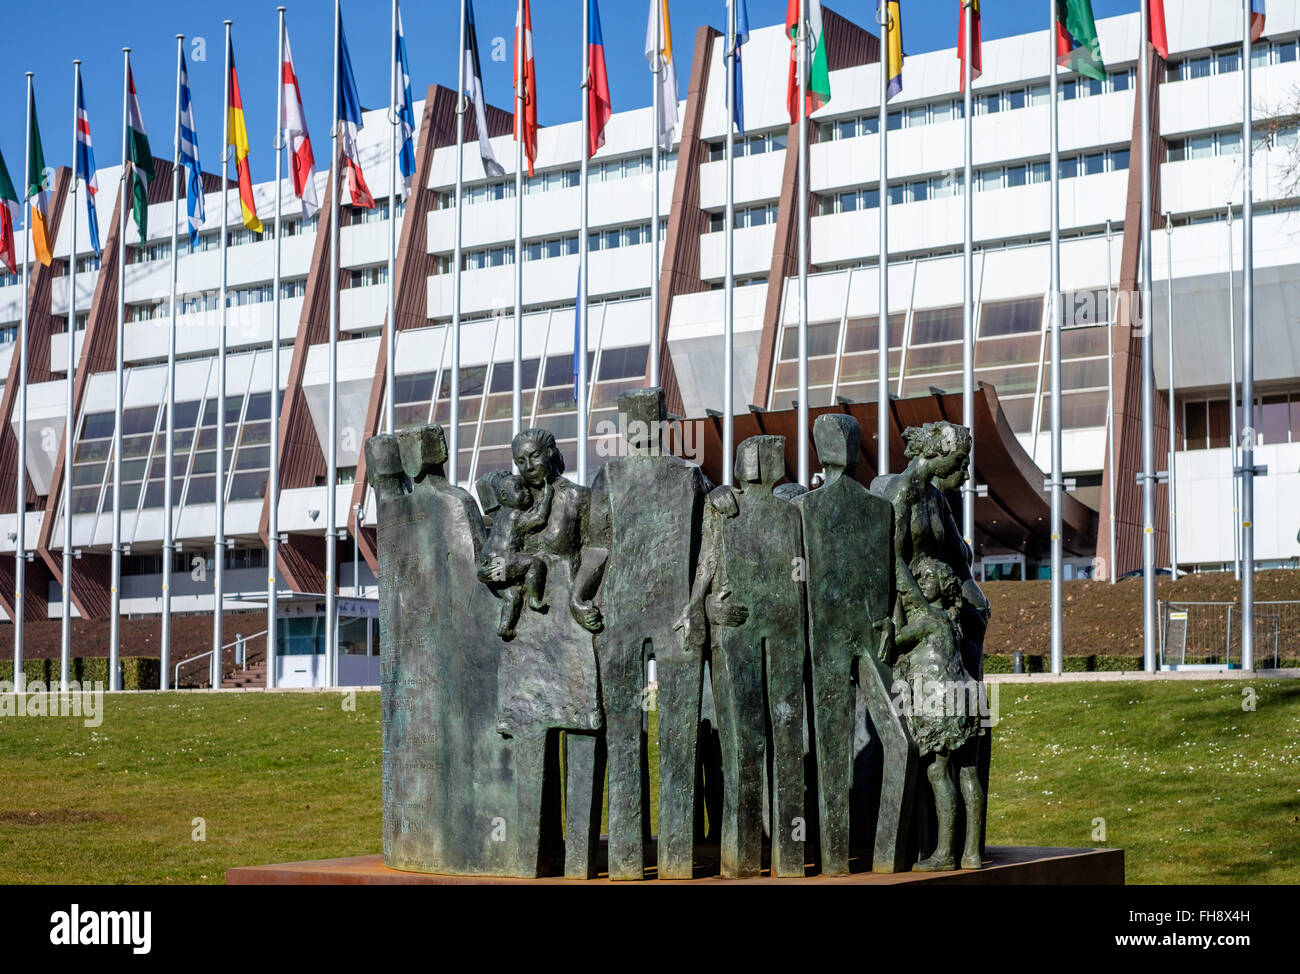 Menschenrechtsdenkmal, vor dem Gebäude des Europarates, Palais de l'Europe, Spende der Region Murcia Spanien, Straßburg, Elsass, Frankreich Stockfoto